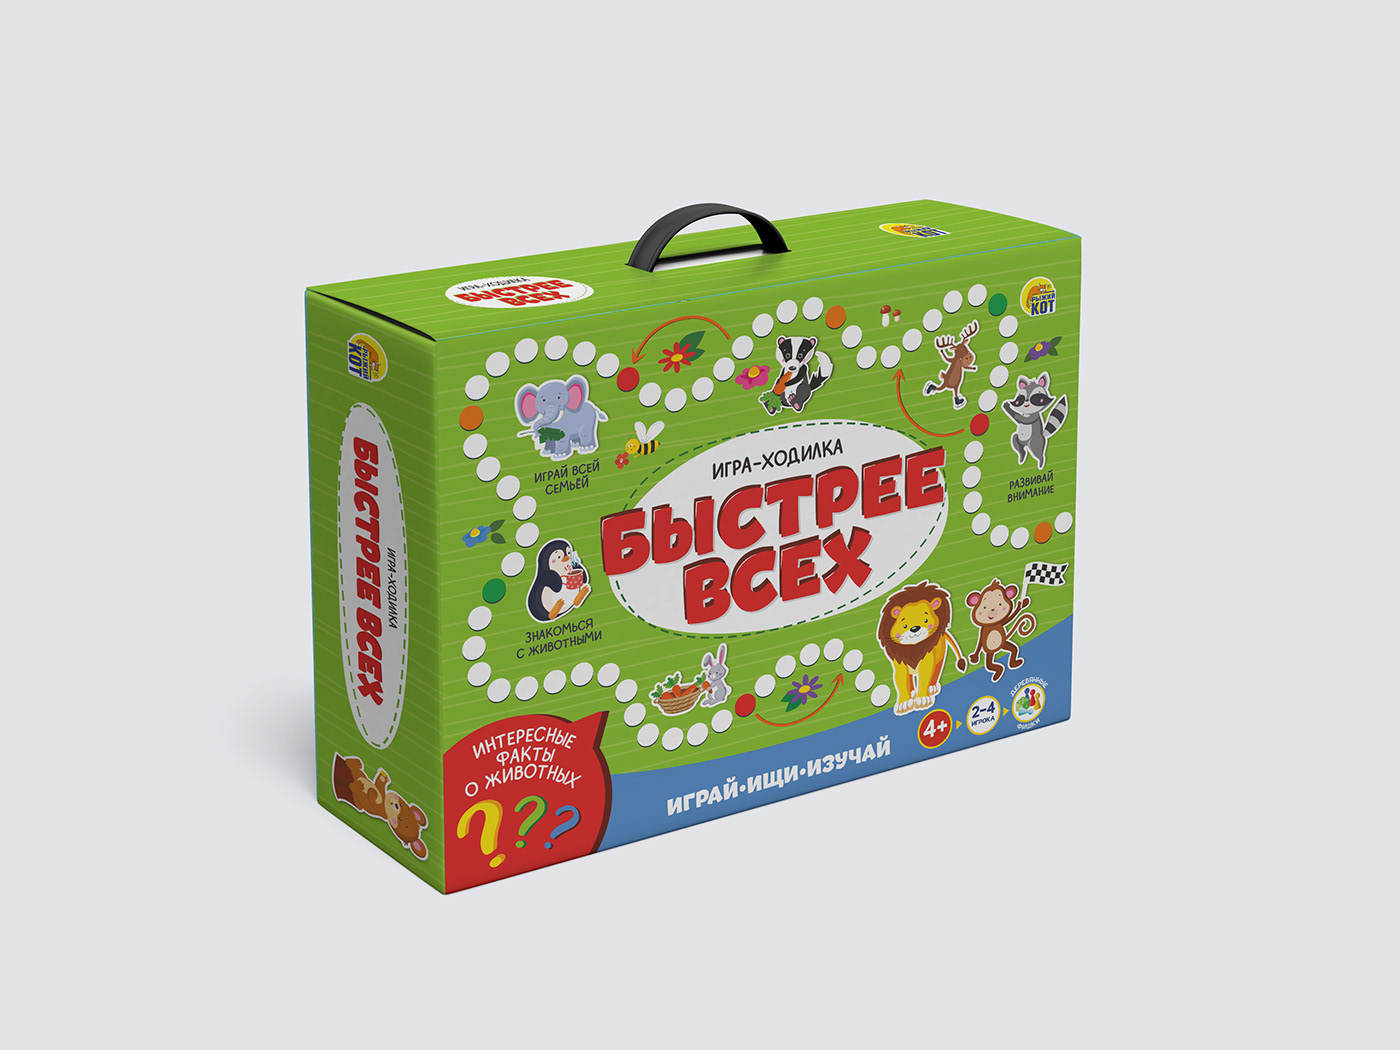 упаковка дизайн упаковки дизайн игры иллюстрация графический дизайн фирменный стиль дизайн Дизайн коробки дизайн этикетки настольная игра